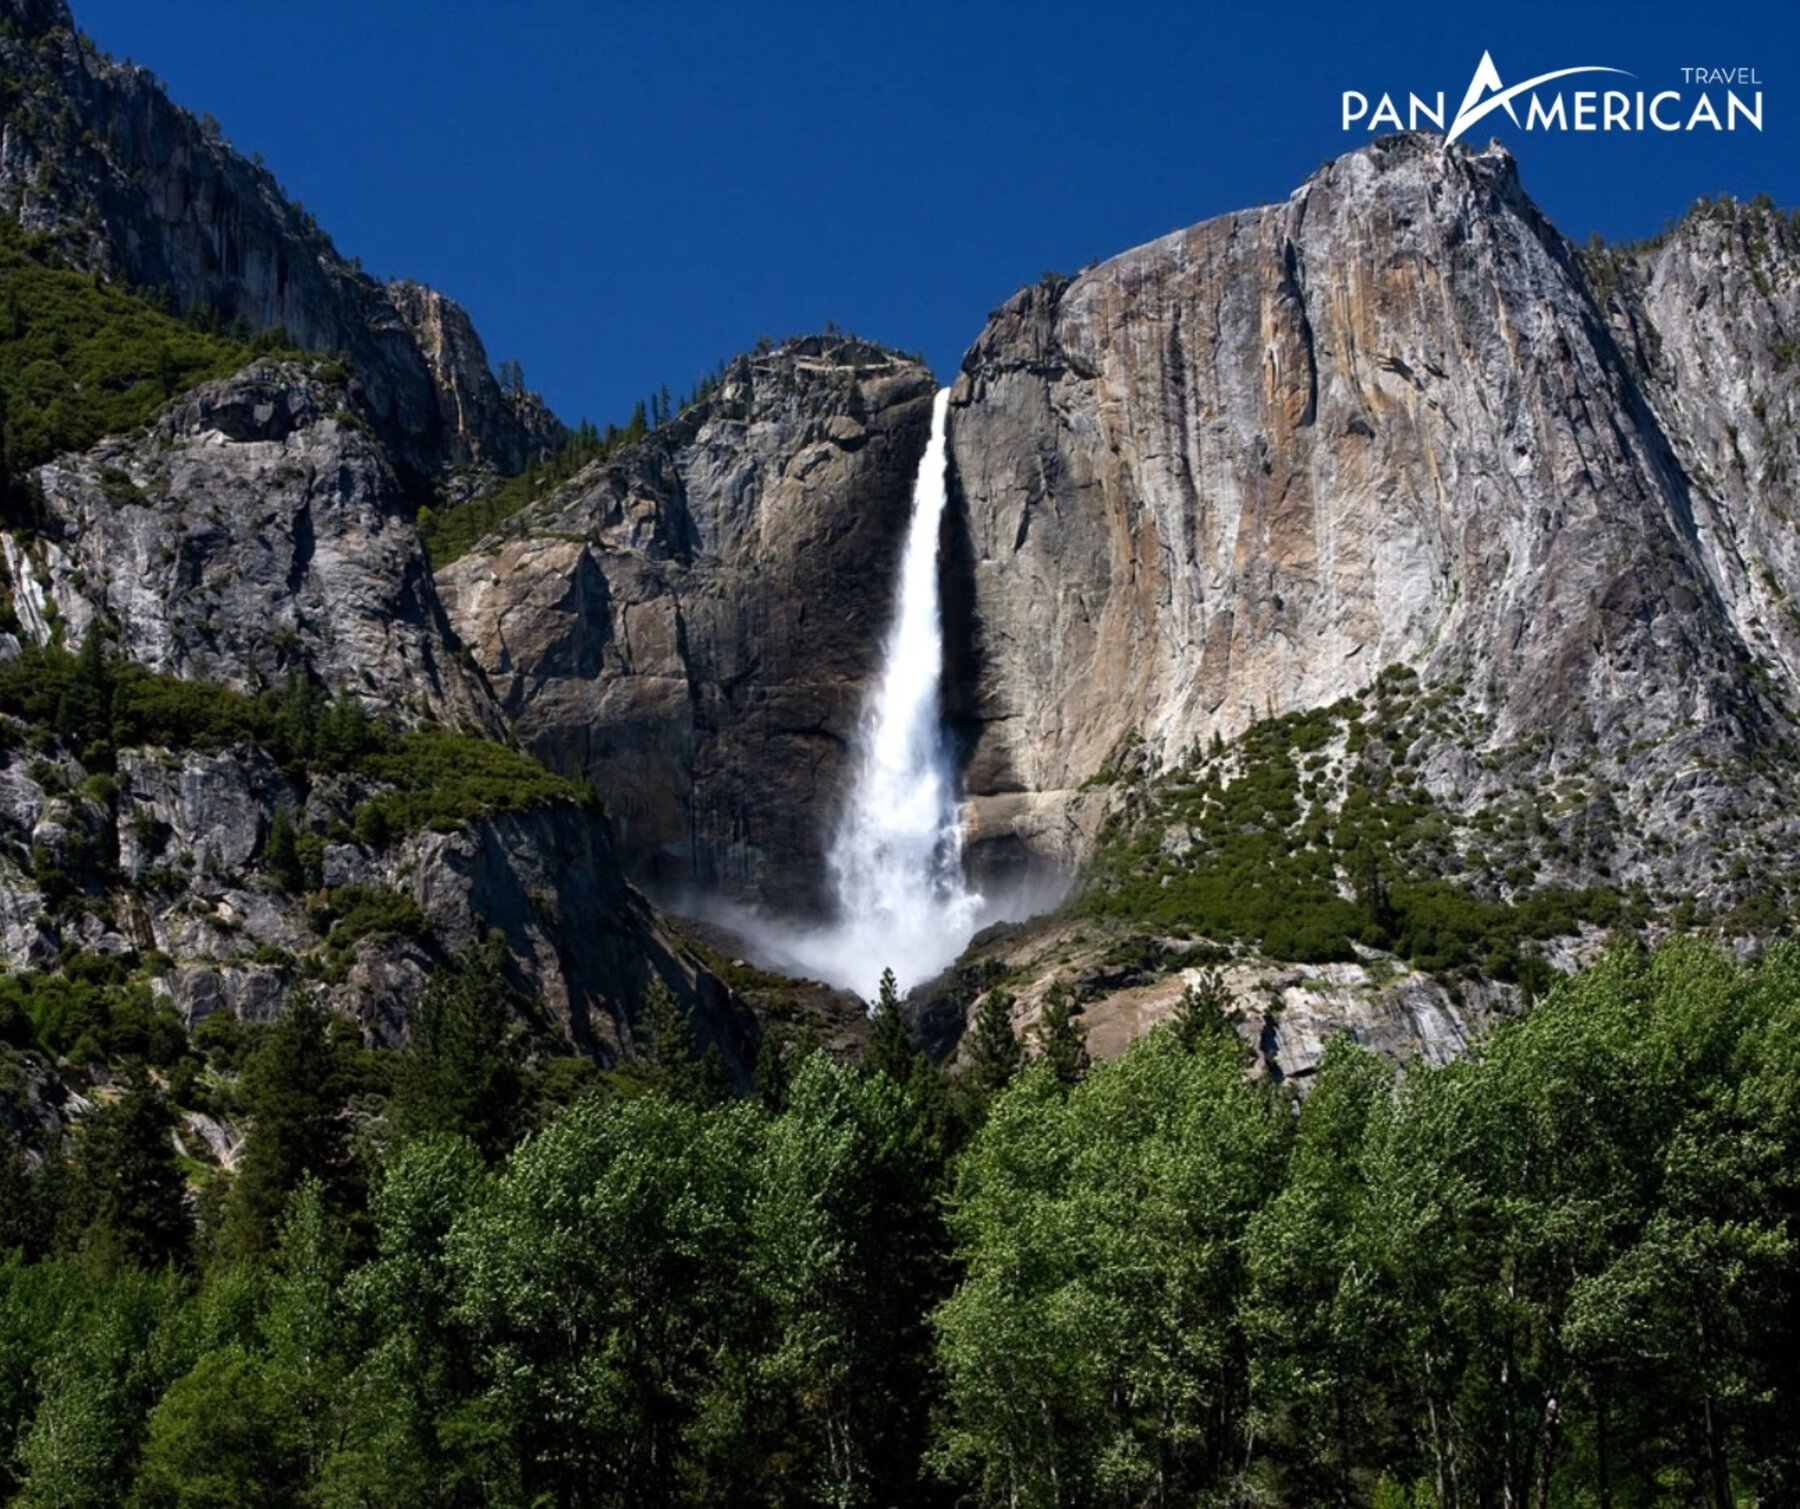 Chiêm ngưỡng cảnh quan kỳ vĩ của top 10 công viên quốc gia đẹp nhất nước Mỹ - Gallery Image